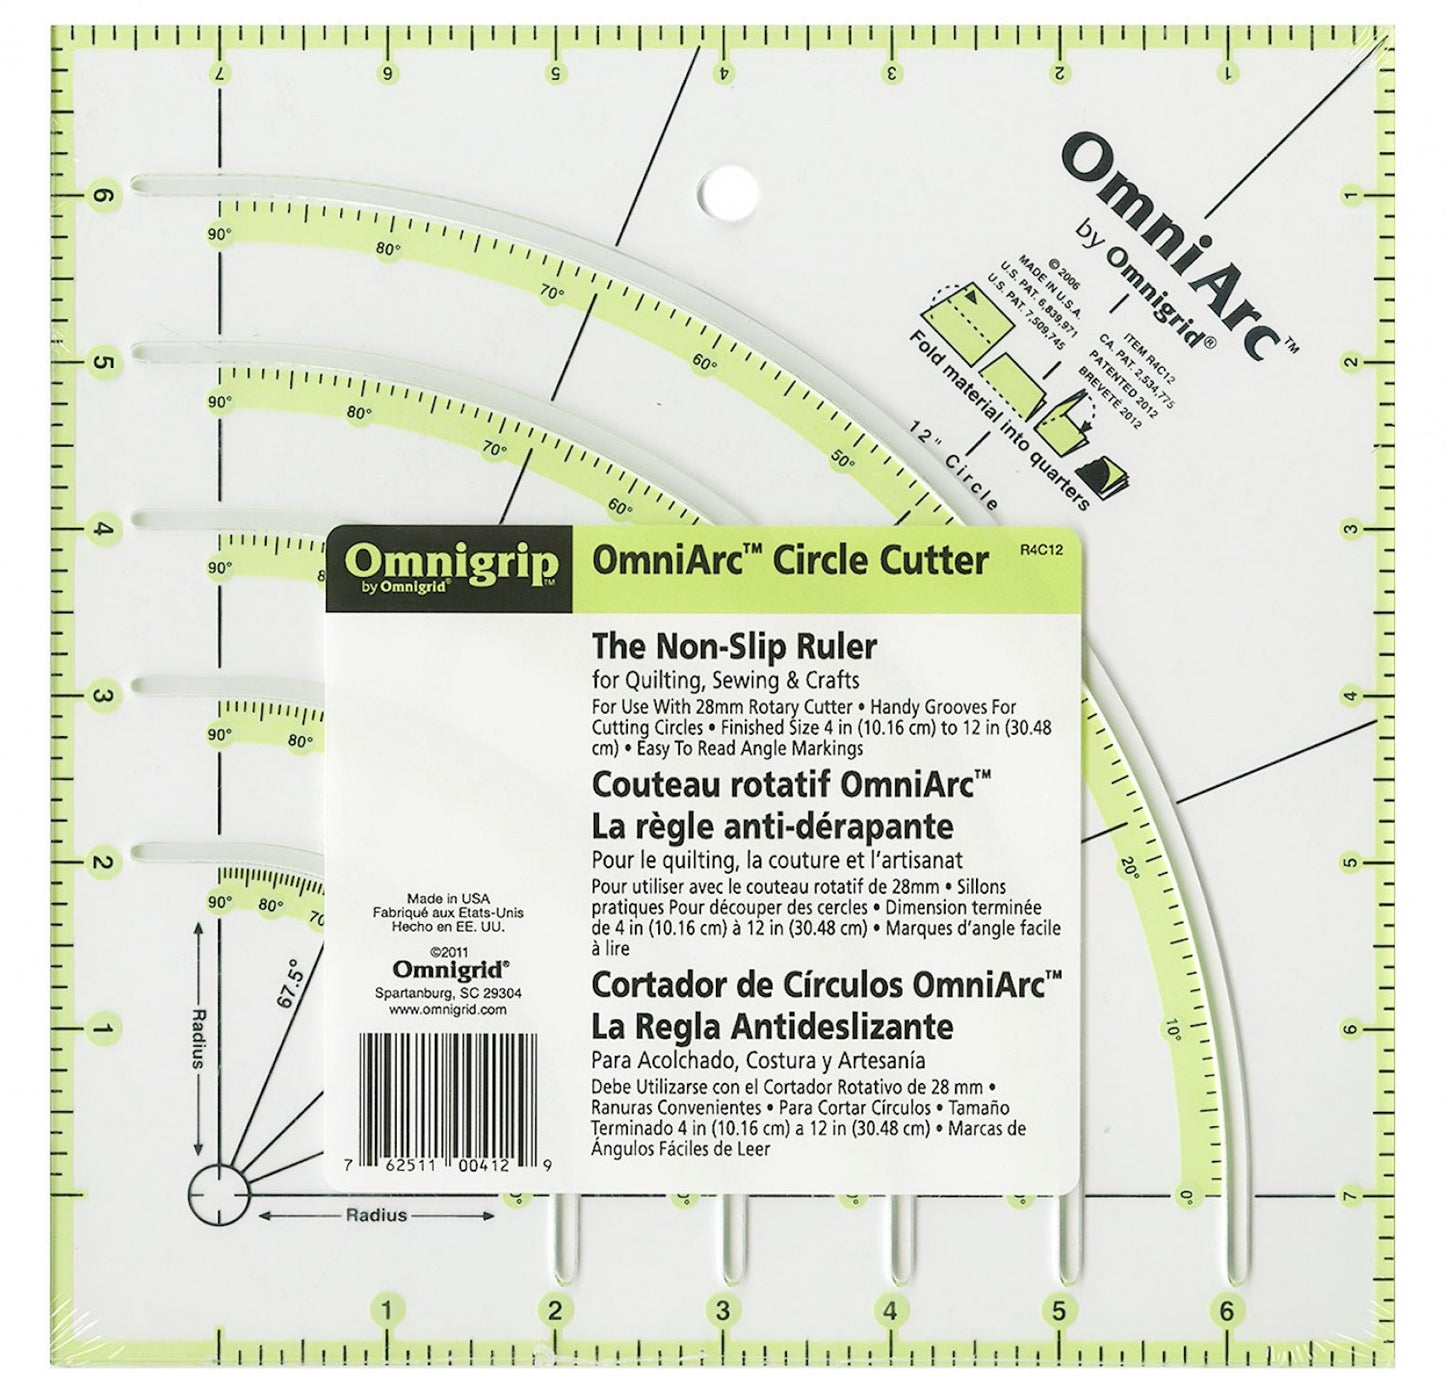 OmniGrip OmniArc Circle Cutter